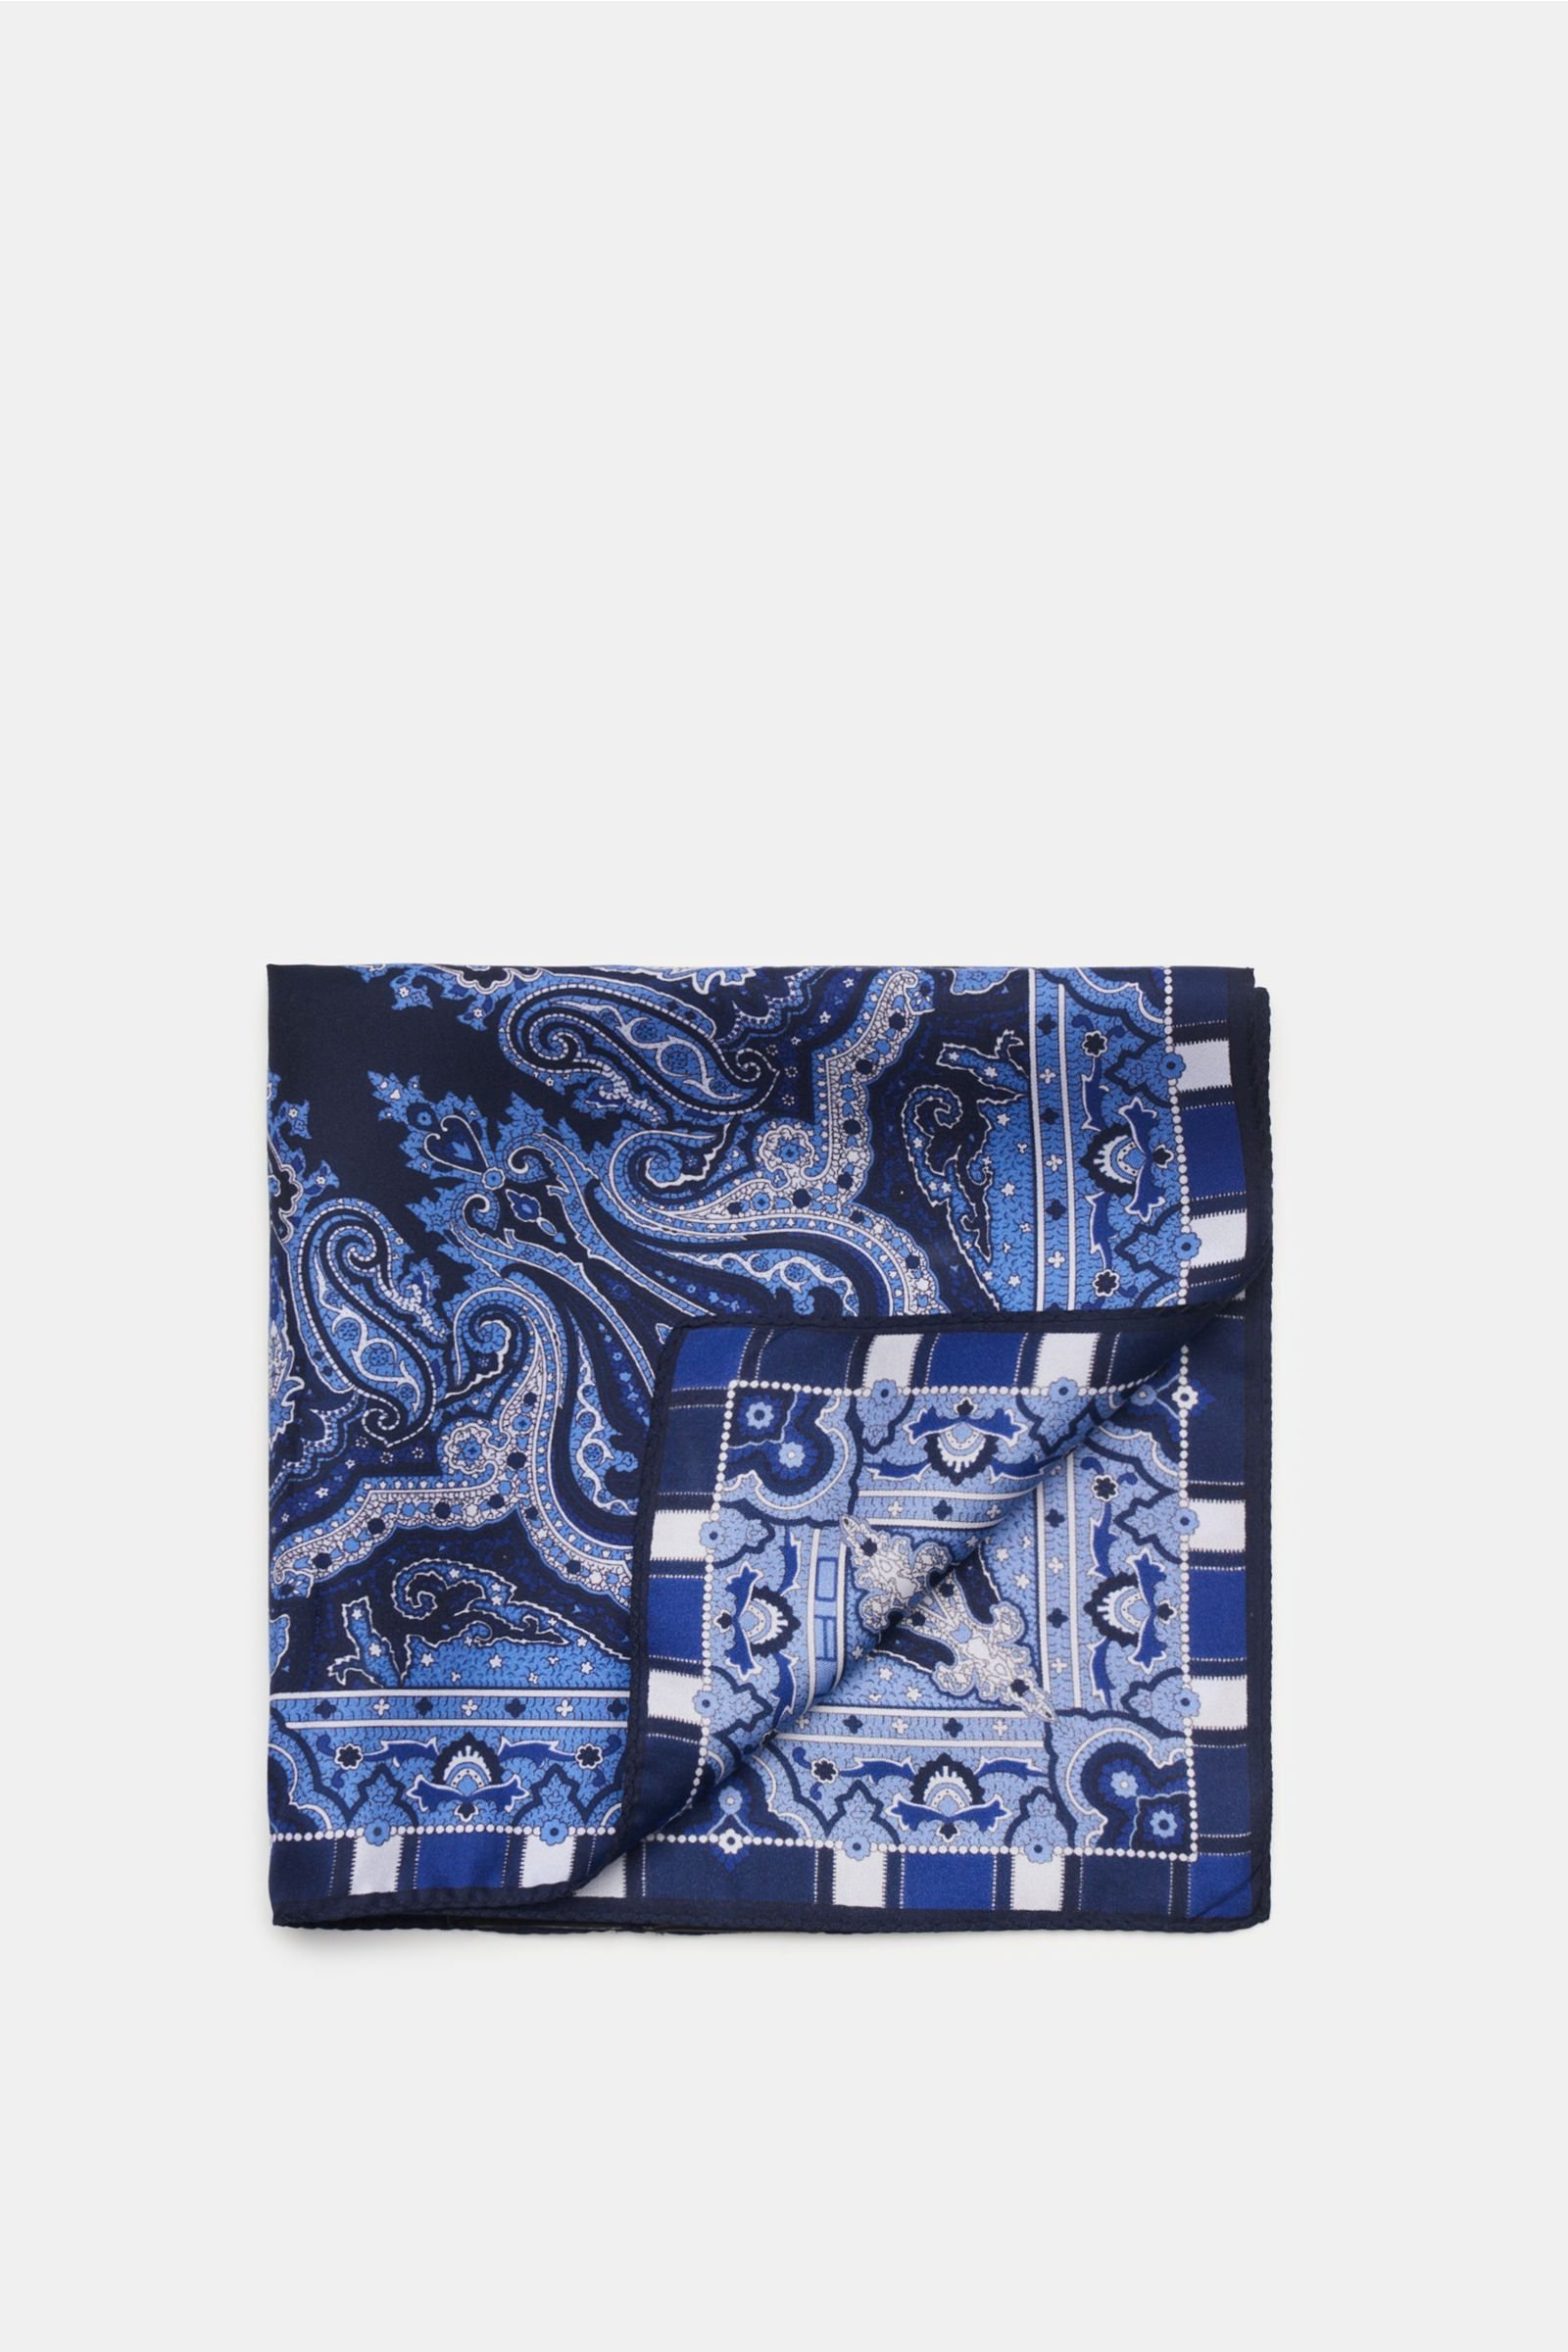 Pocket square navy/blue, patterned